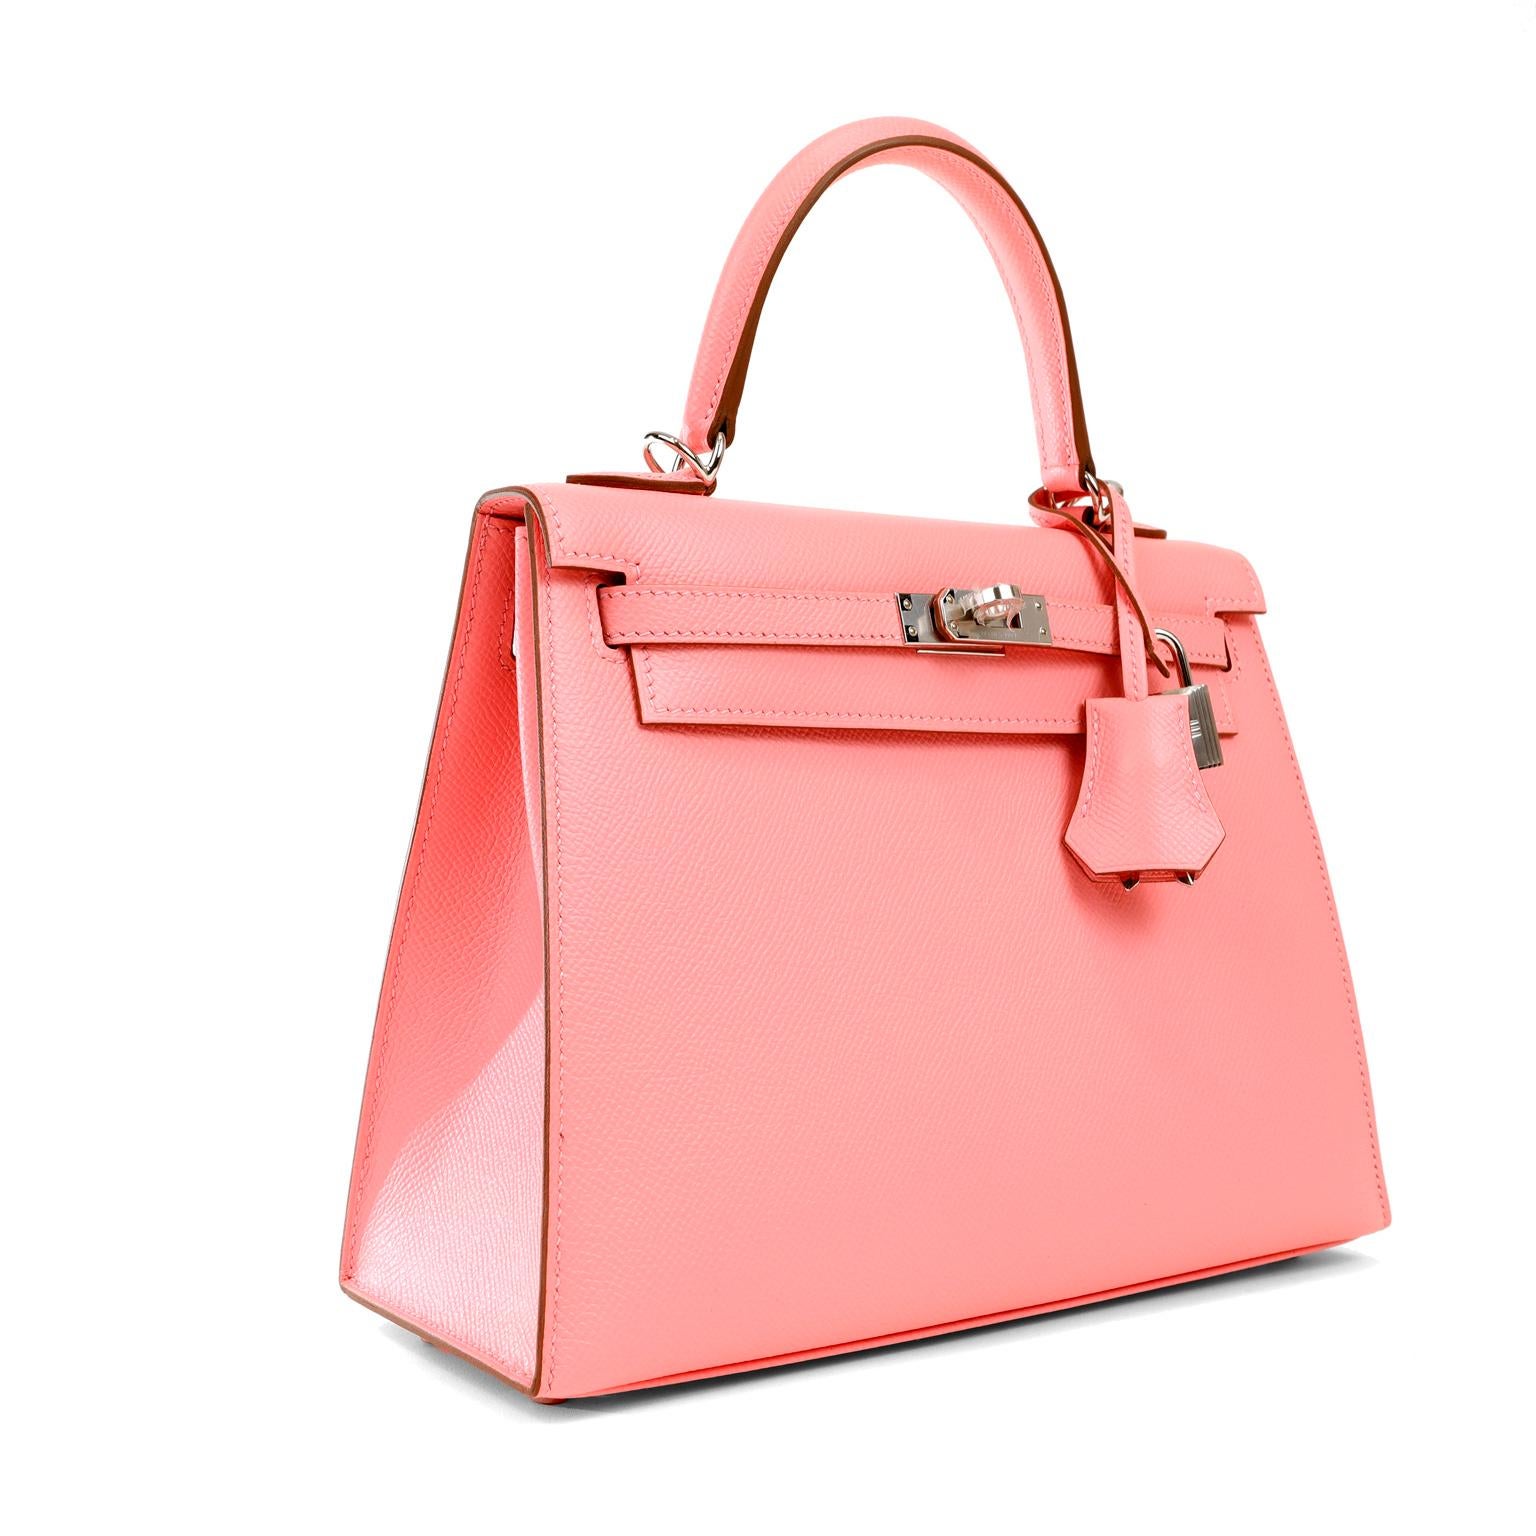 Cet authentique Kelly Sellier Hermès Pink Condit 25 cm est en parfait état, avec le plastique de protection intact sur la quincaillerie.     Les sacs Hermès sont considérés dans le monde entier comme l'objet de luxe par excellence.  Chaque pièce est